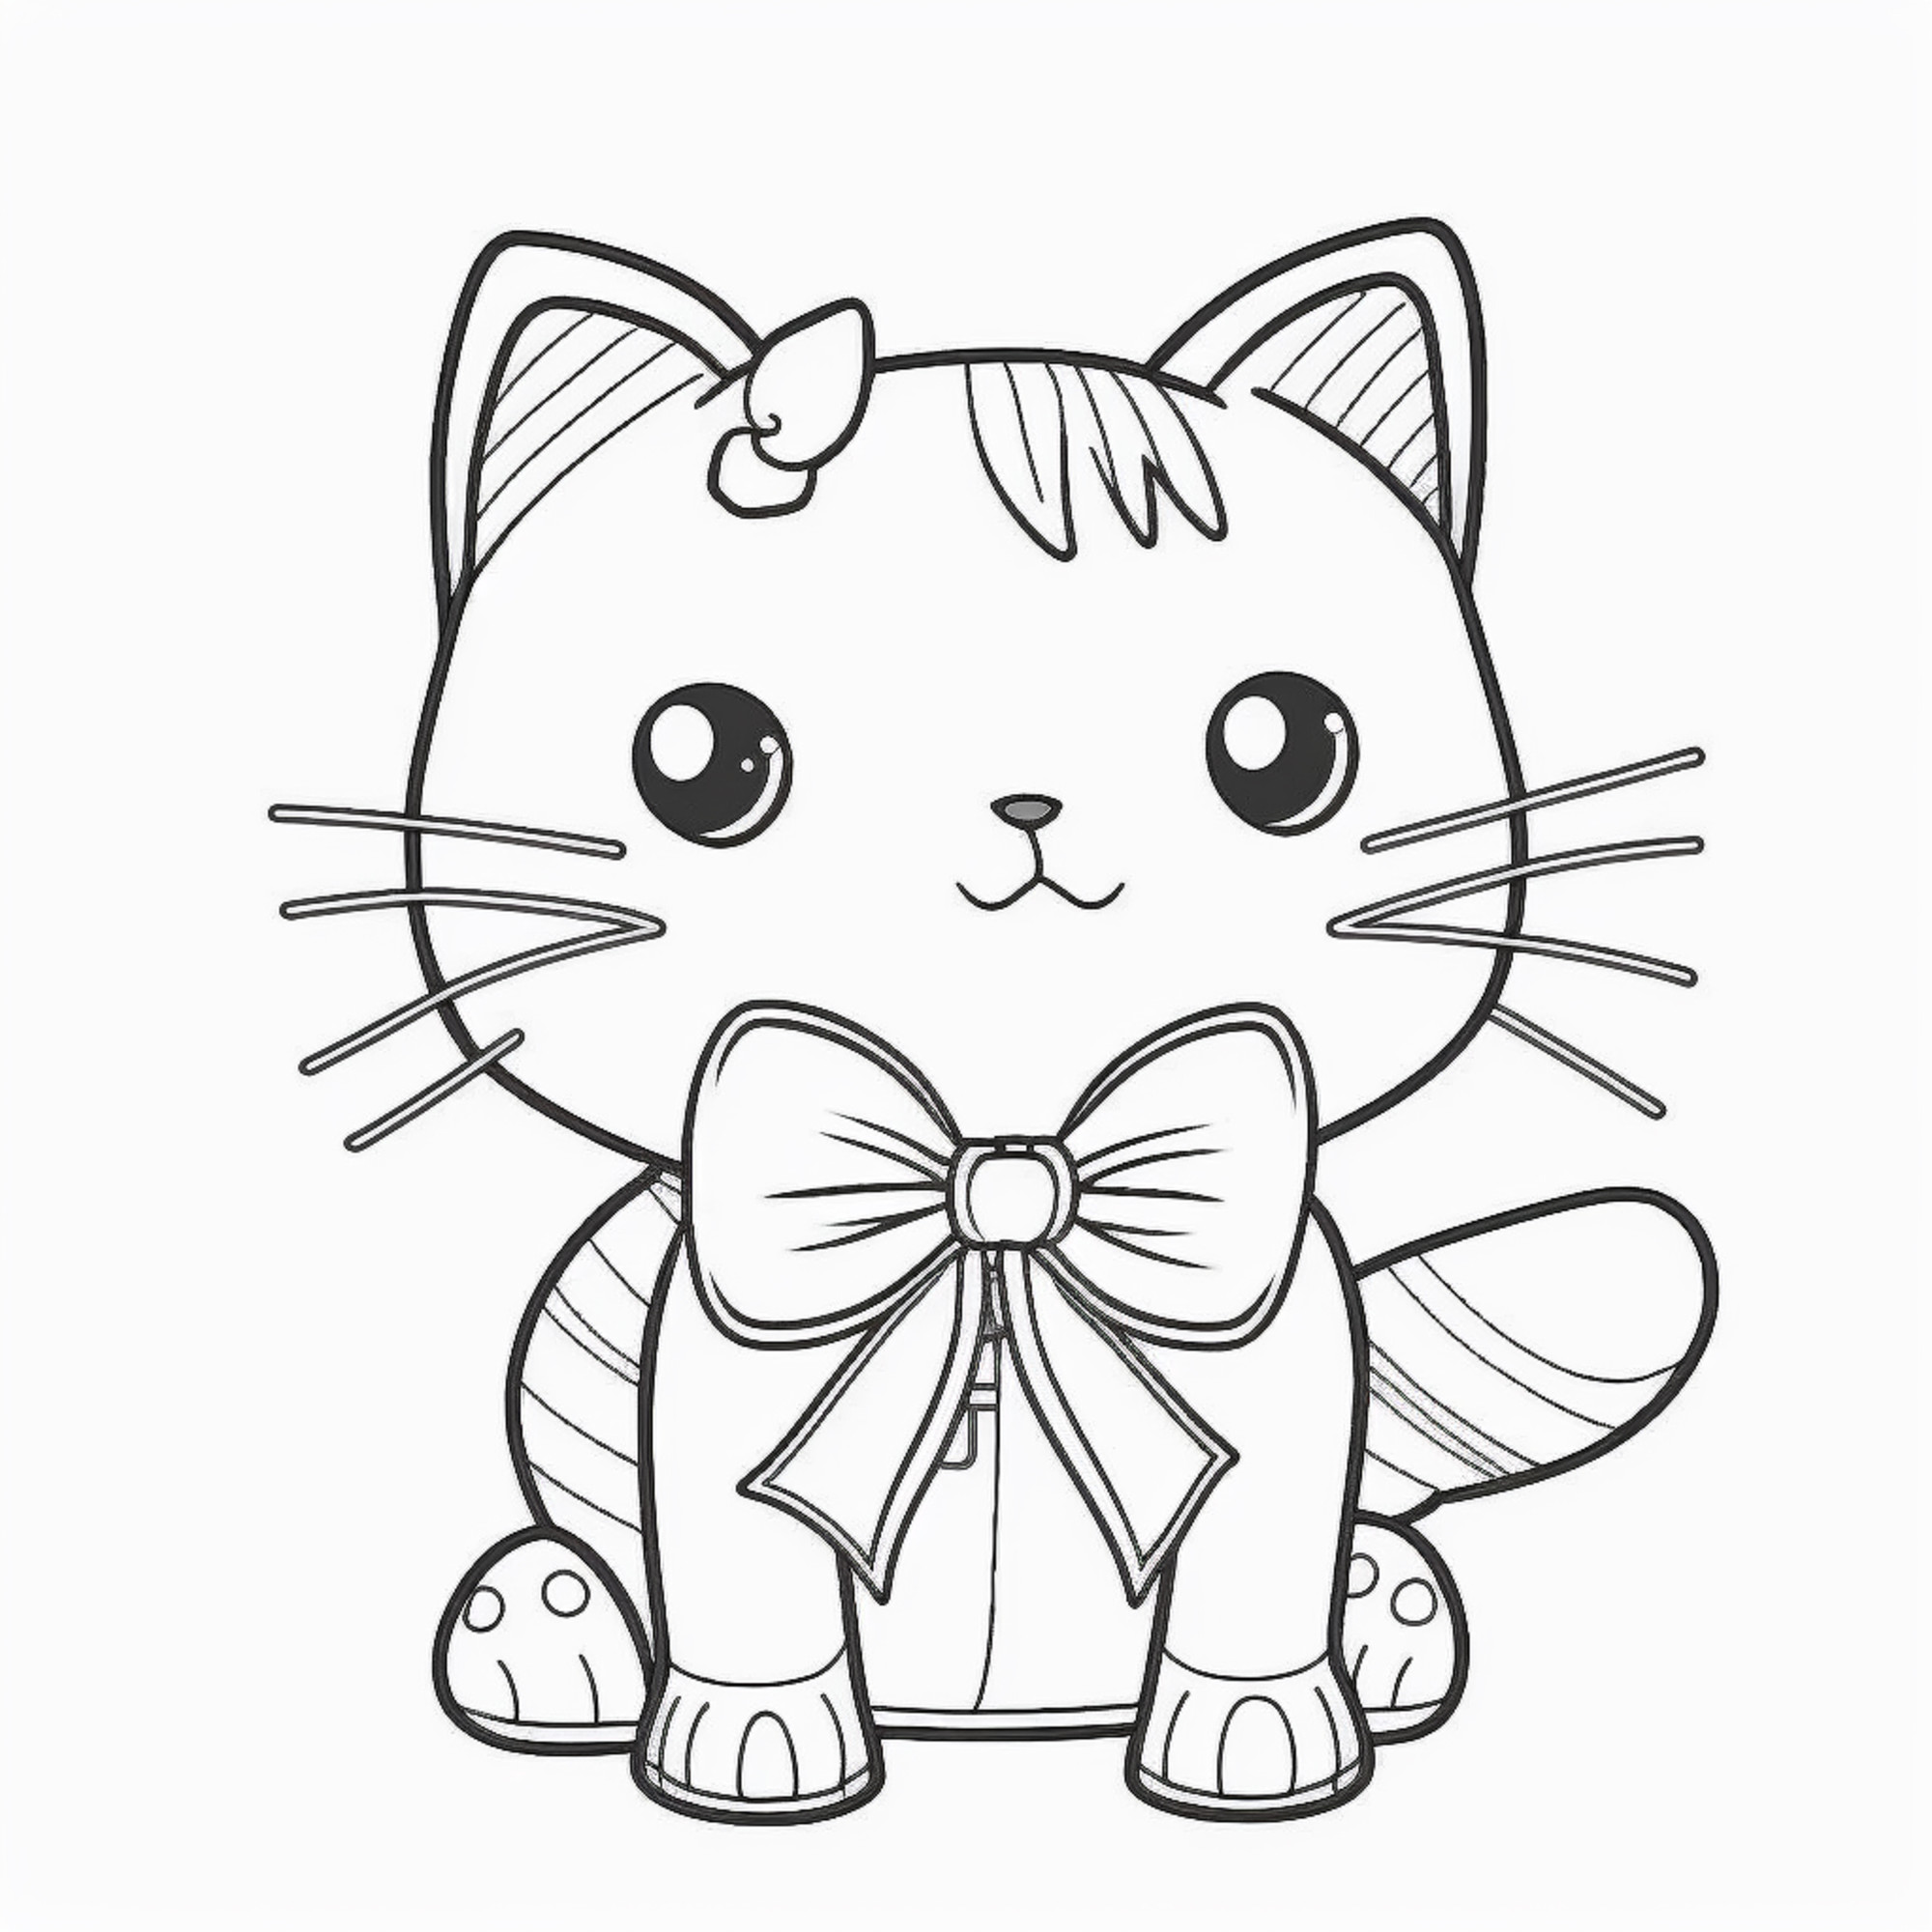 Раскраска для детей: аниме котенок с большим бантиком